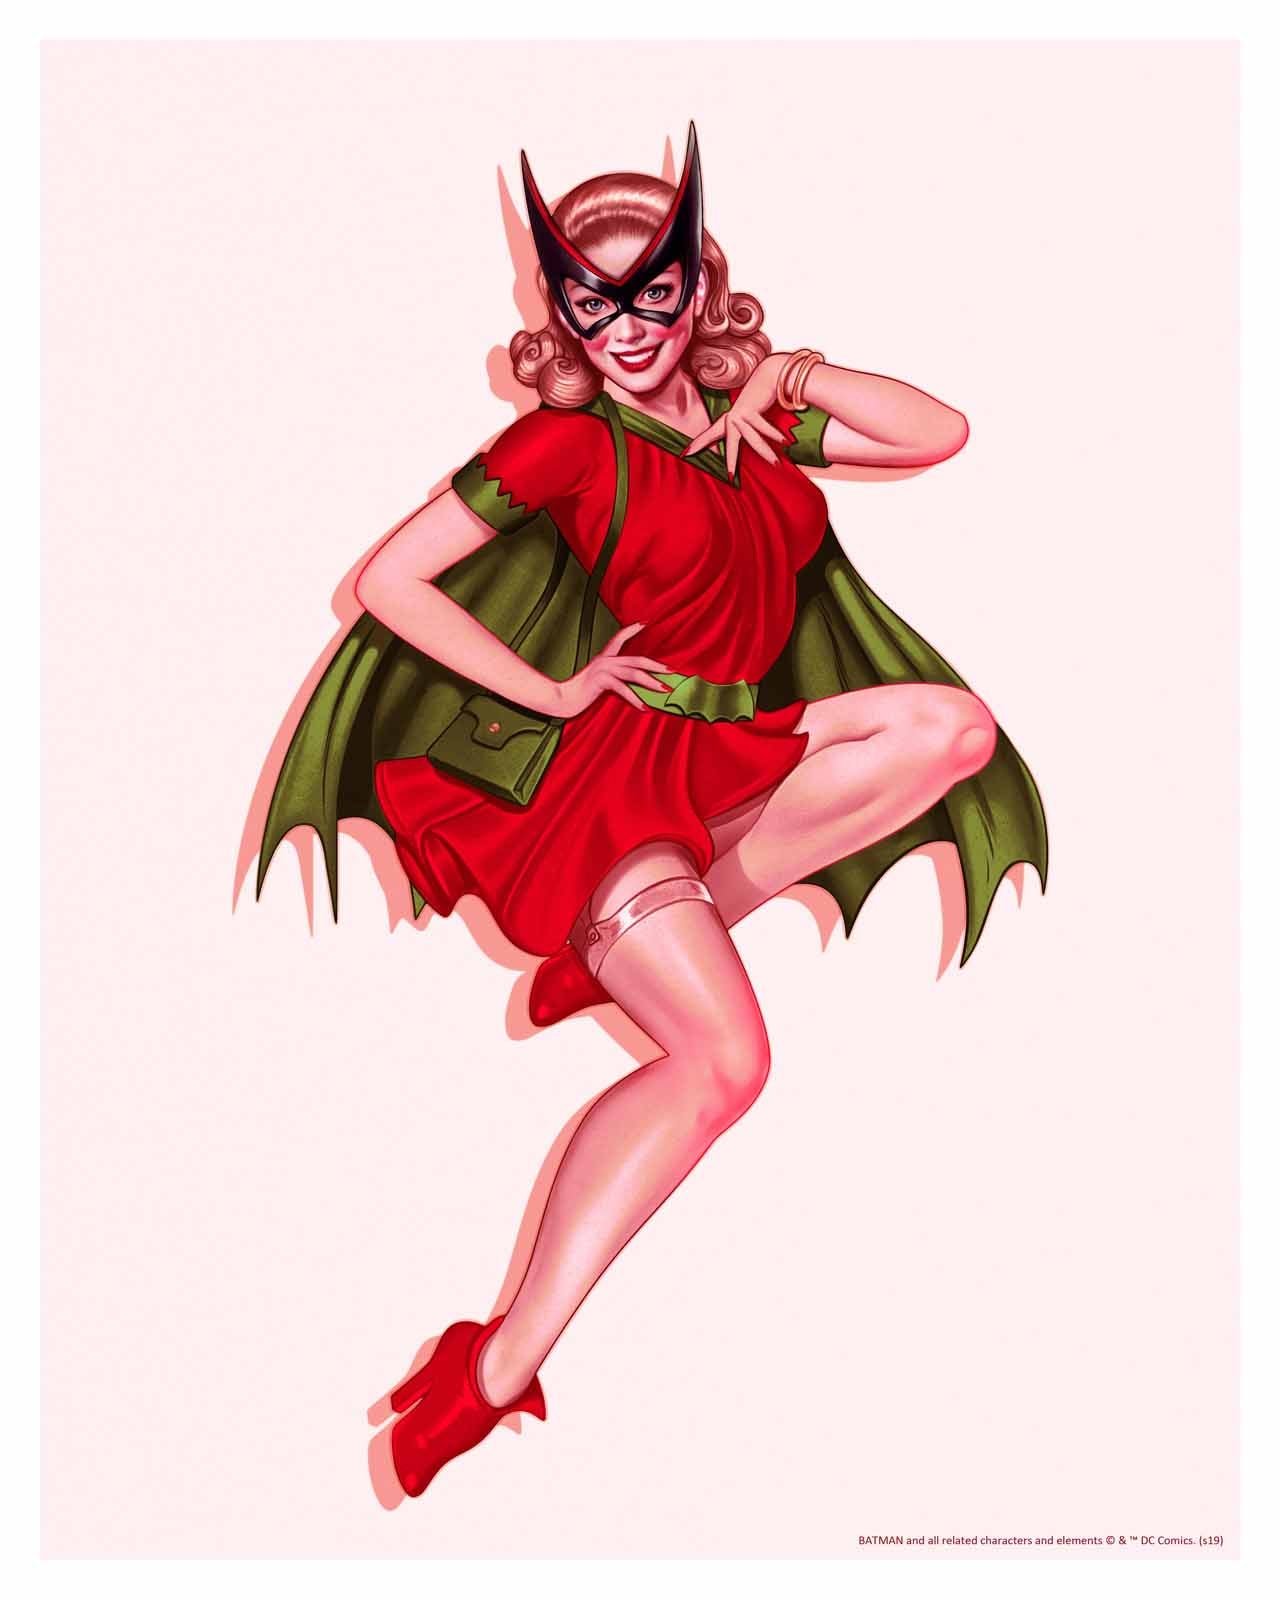 John Keaveney "Batgirl" Classic Detective Comics